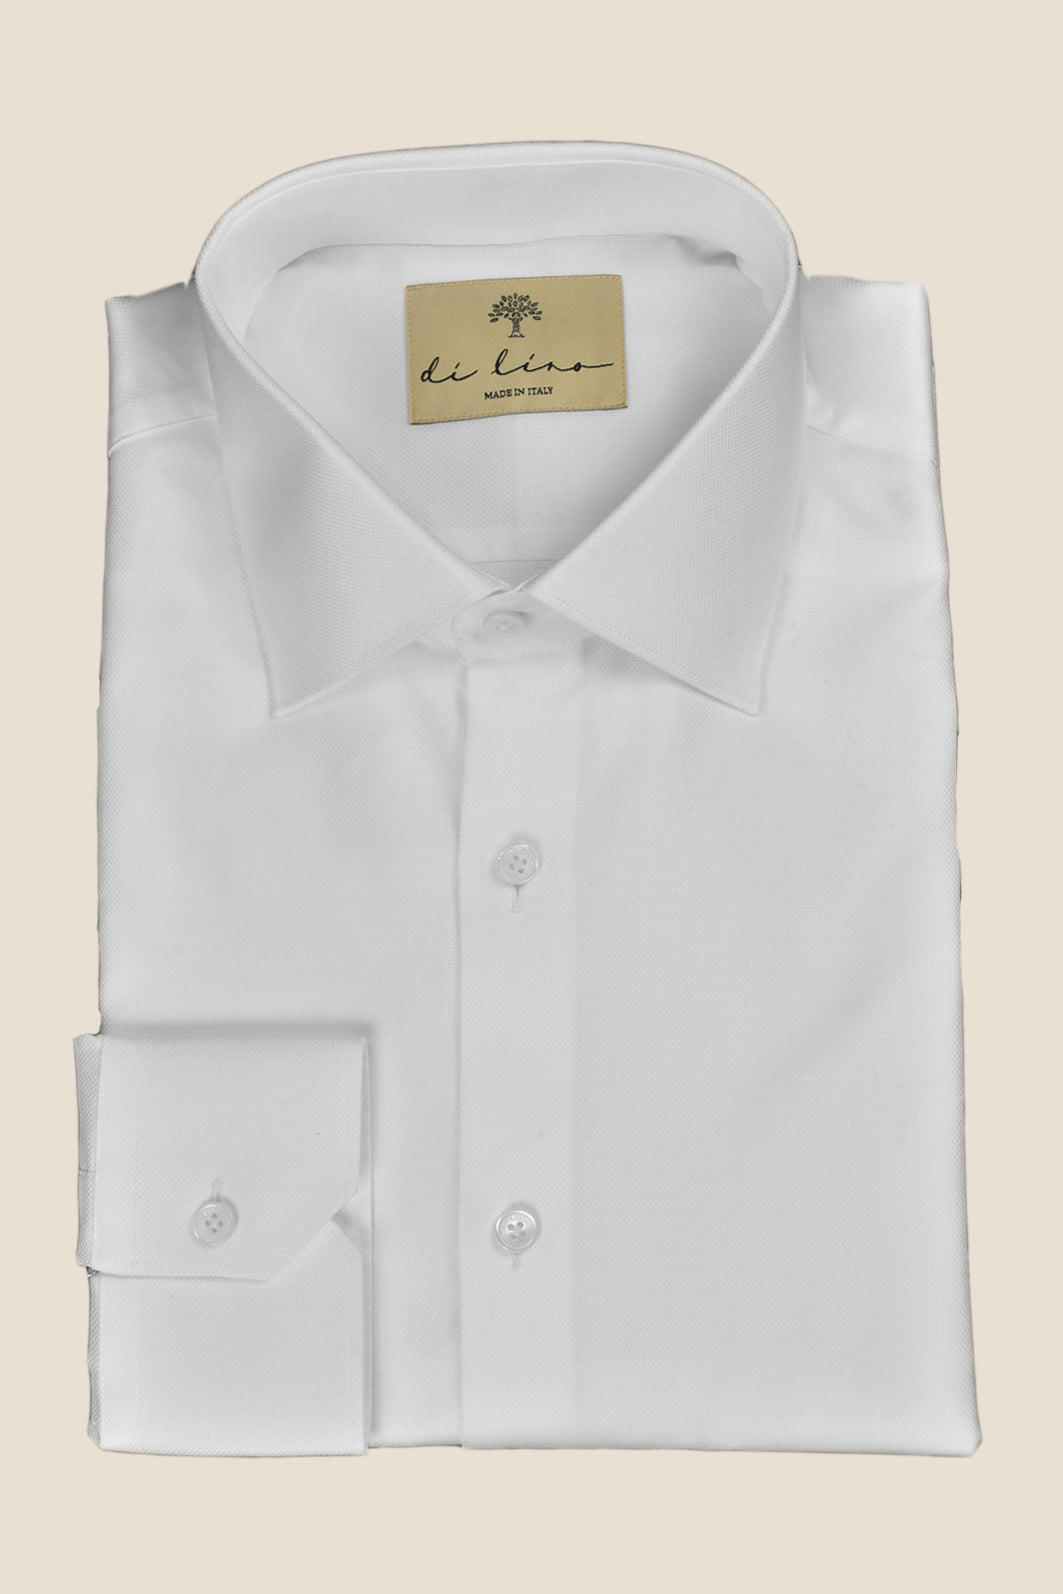 Weisses, leicht strukturiertes Business - Hemd aus Bio - Baumwolle mit klassischem Haifischkragen - Made to order